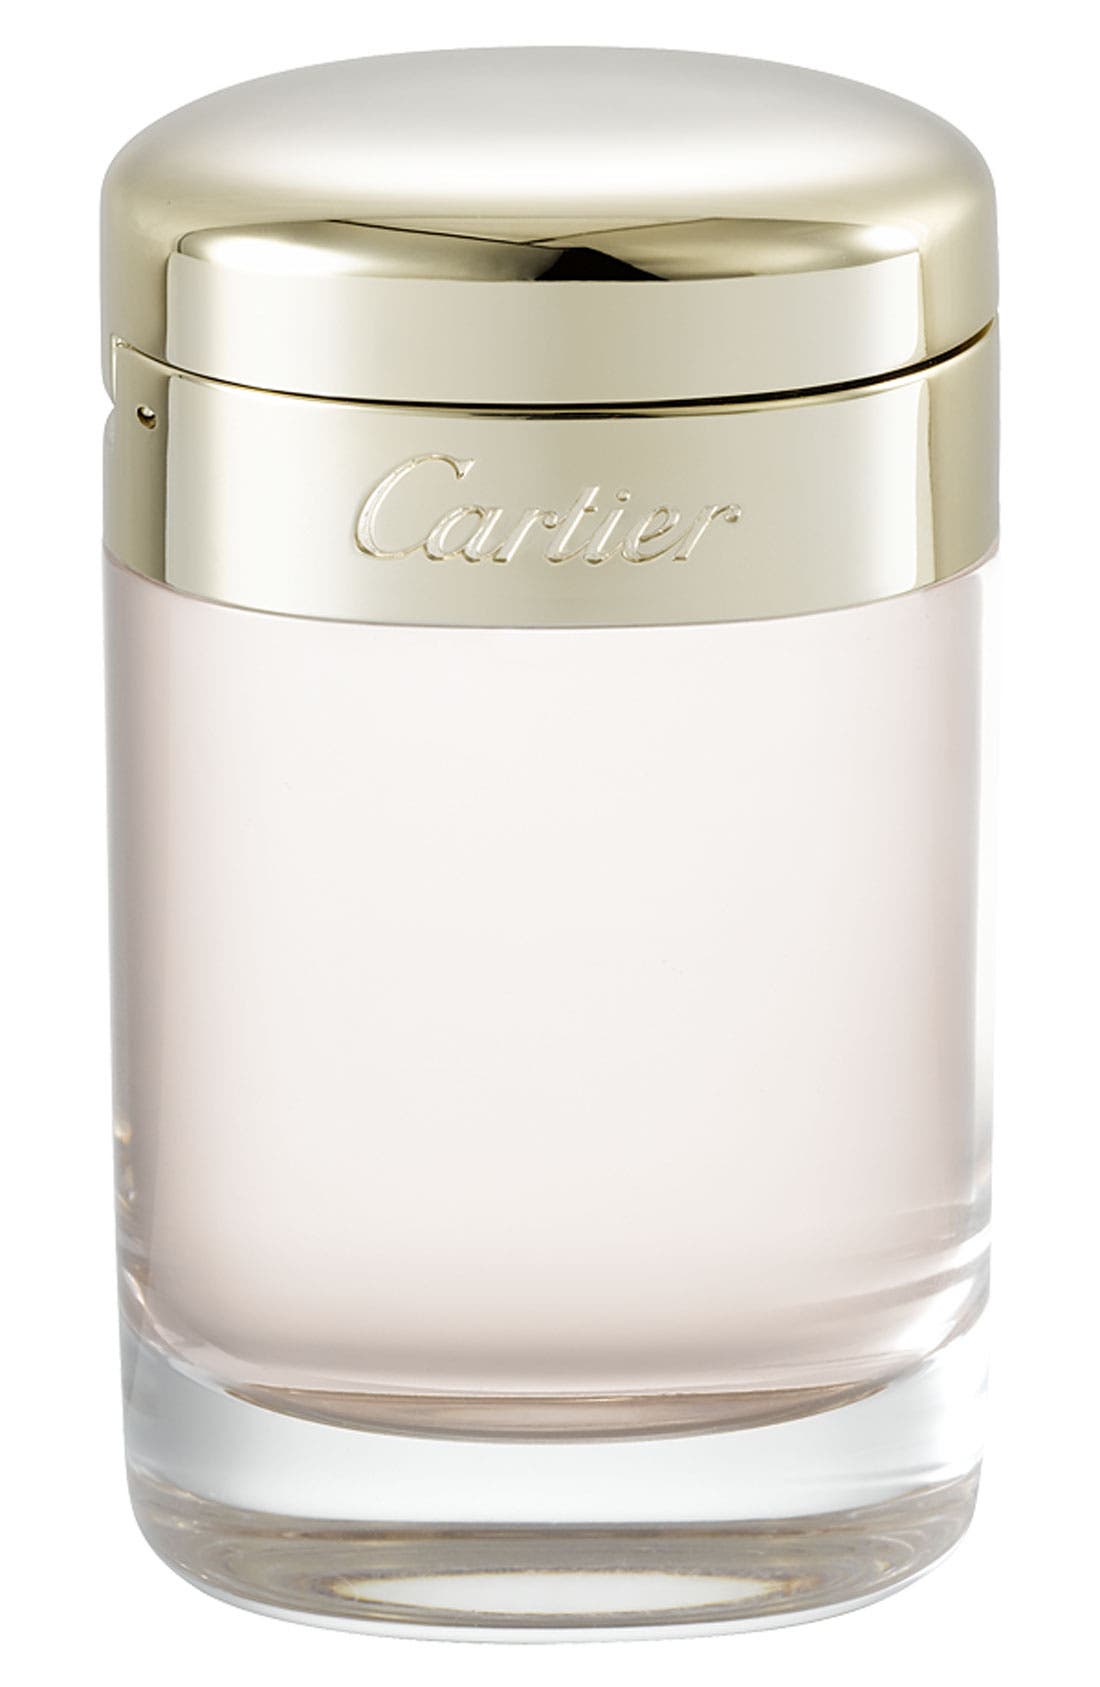 Cartier Baiser Vole Eau de Parfum at Nordstrom, Size 3.3 Oz